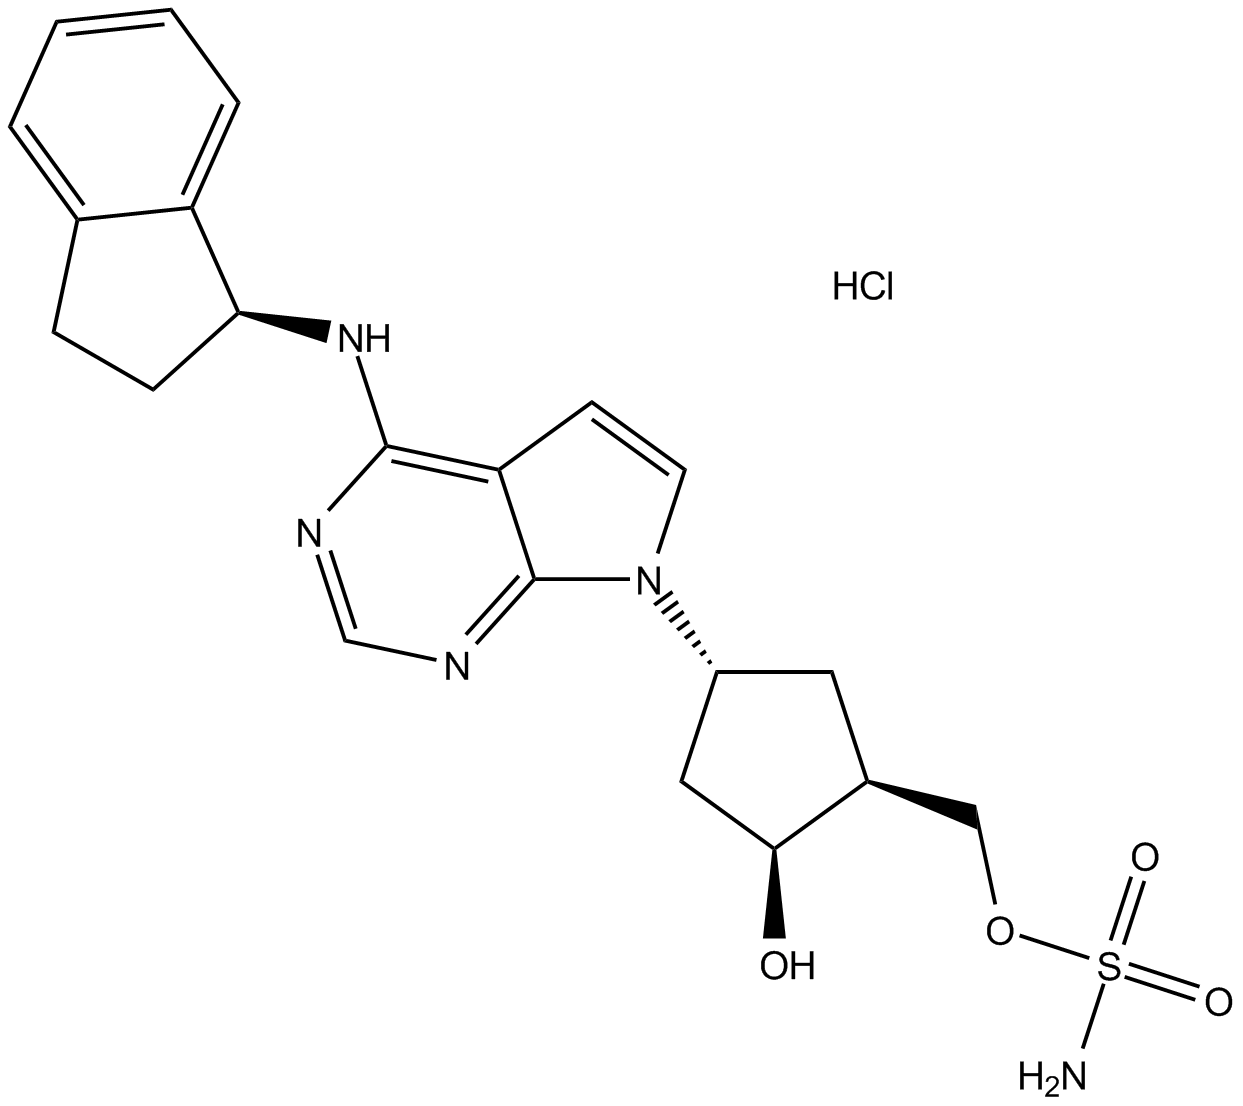 MLN4924 HCl salt Chemische Struktur